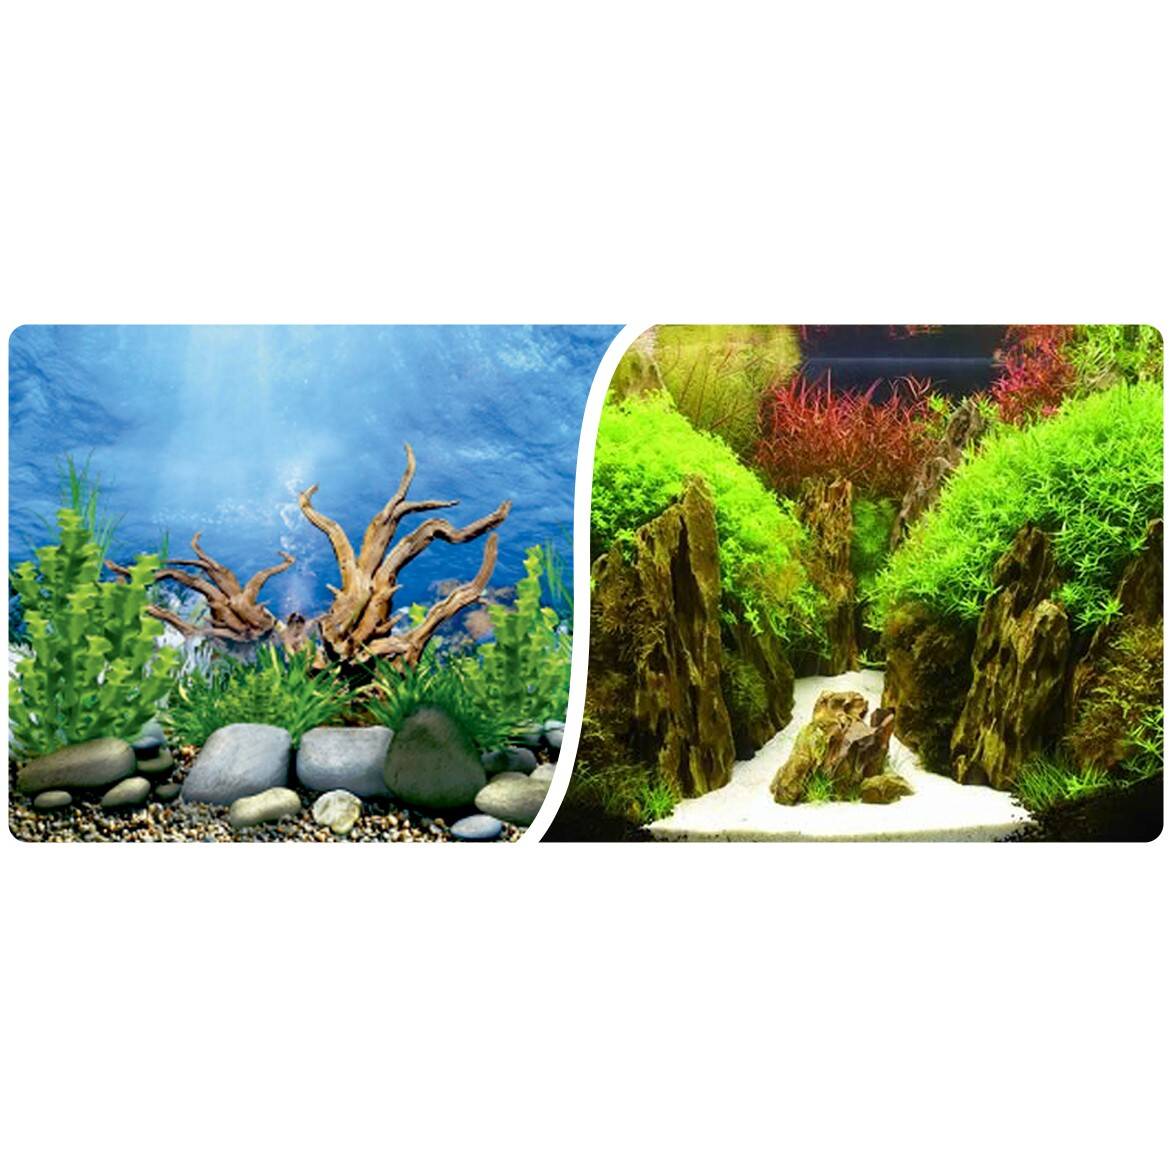 Aquarium background roll 50 cm